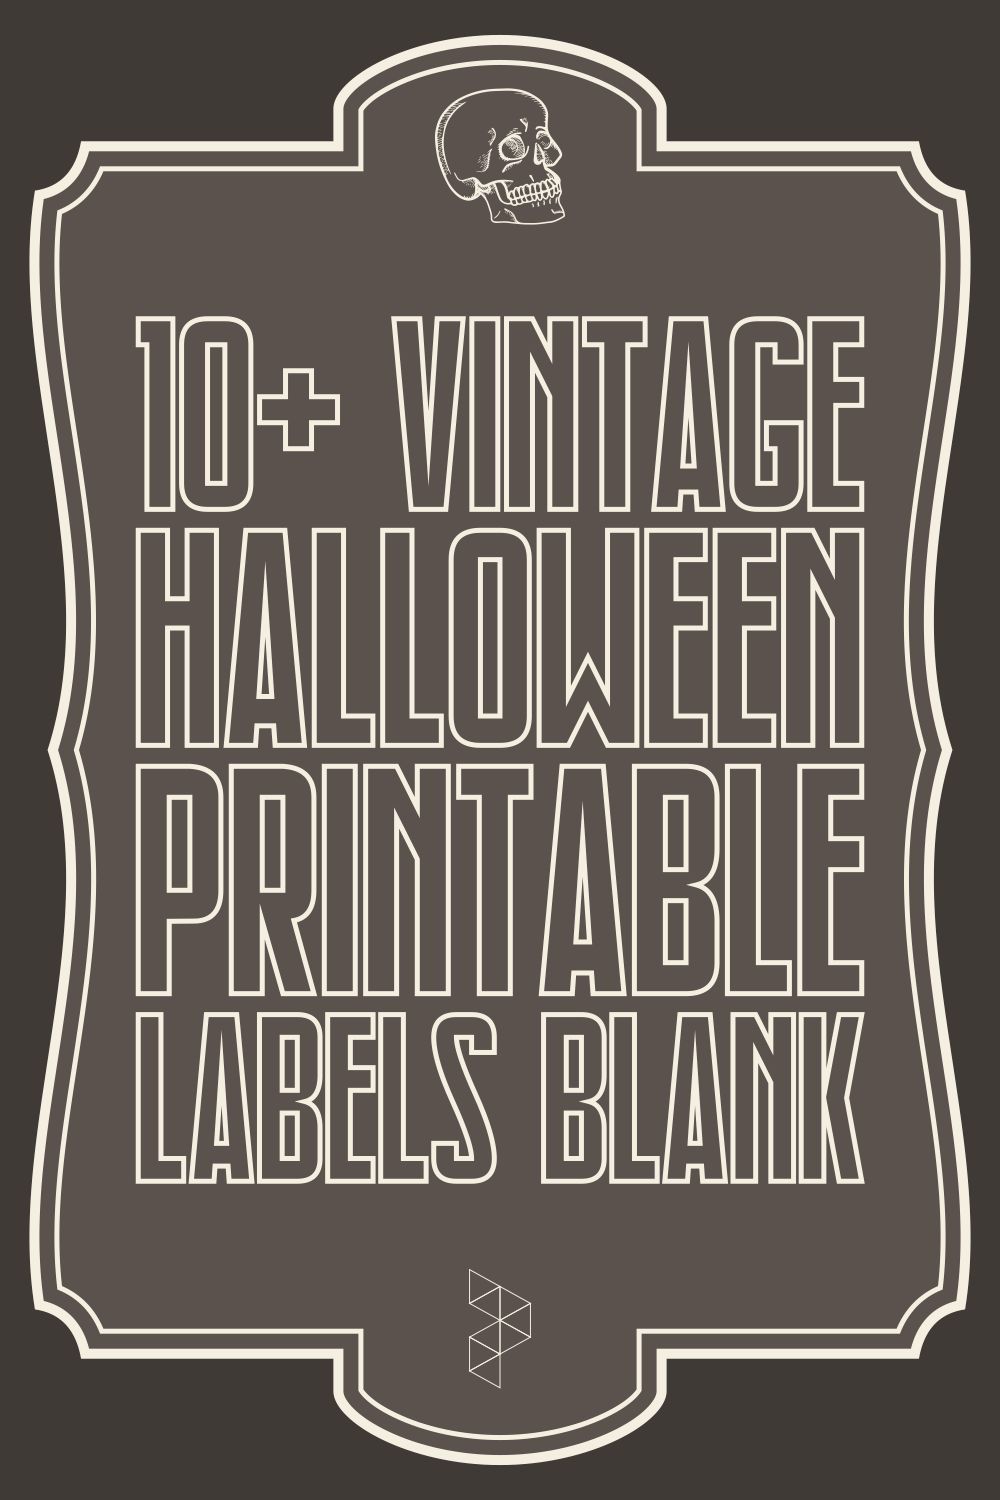 Vintage Halloween Printable Labels Blank